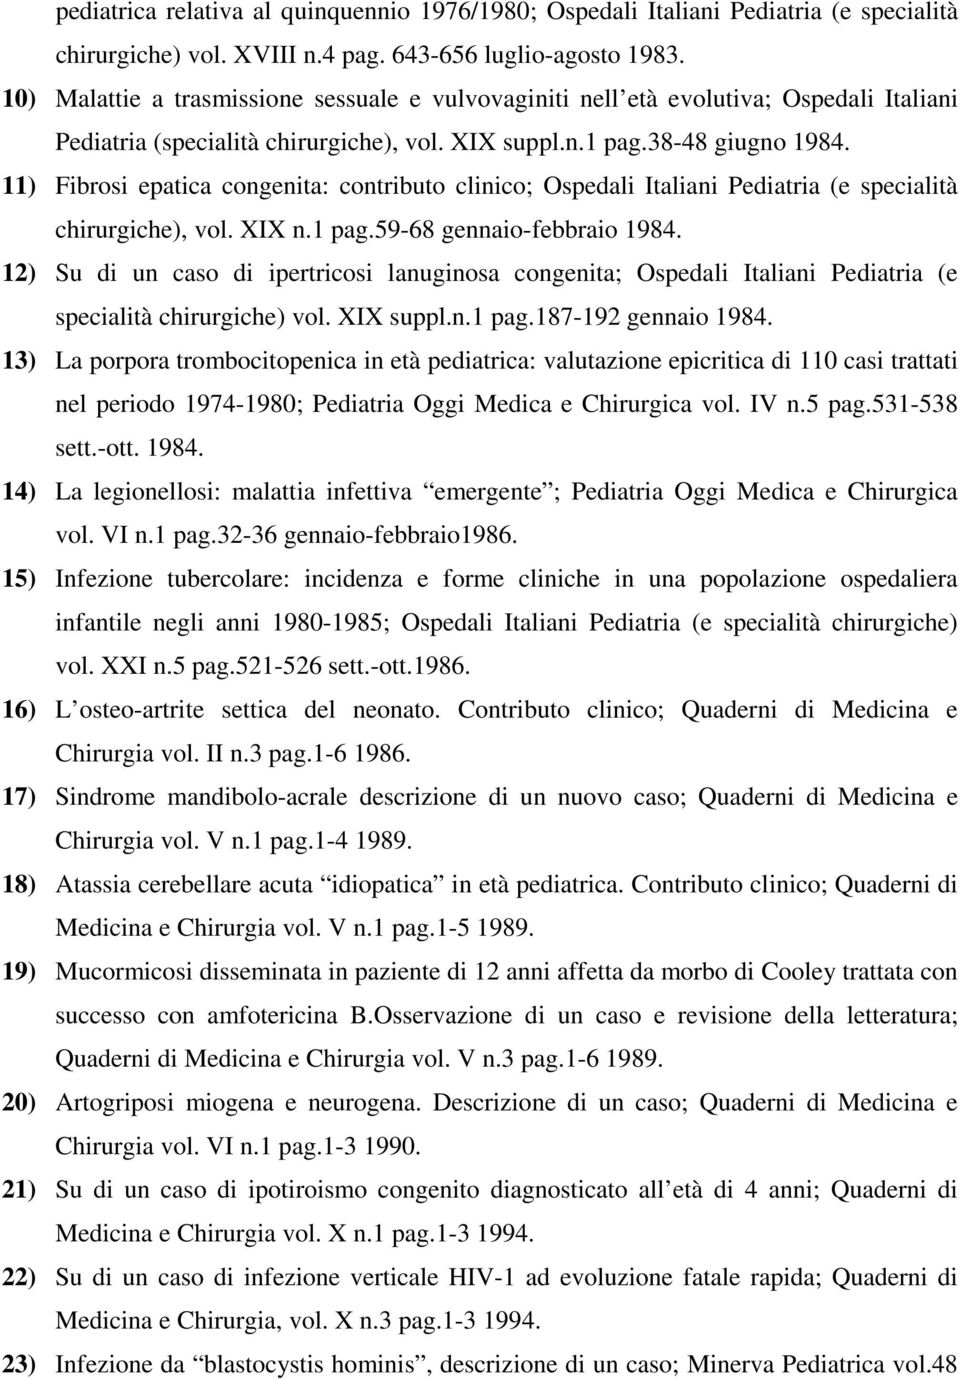 11) Fibrosi epatica congenita: contributo clinico; Ospedali Italiani Pediatria (e specialità chirurgiche), vol. XIX n.1 pag.59-68 gennaio-febbraio 1984.